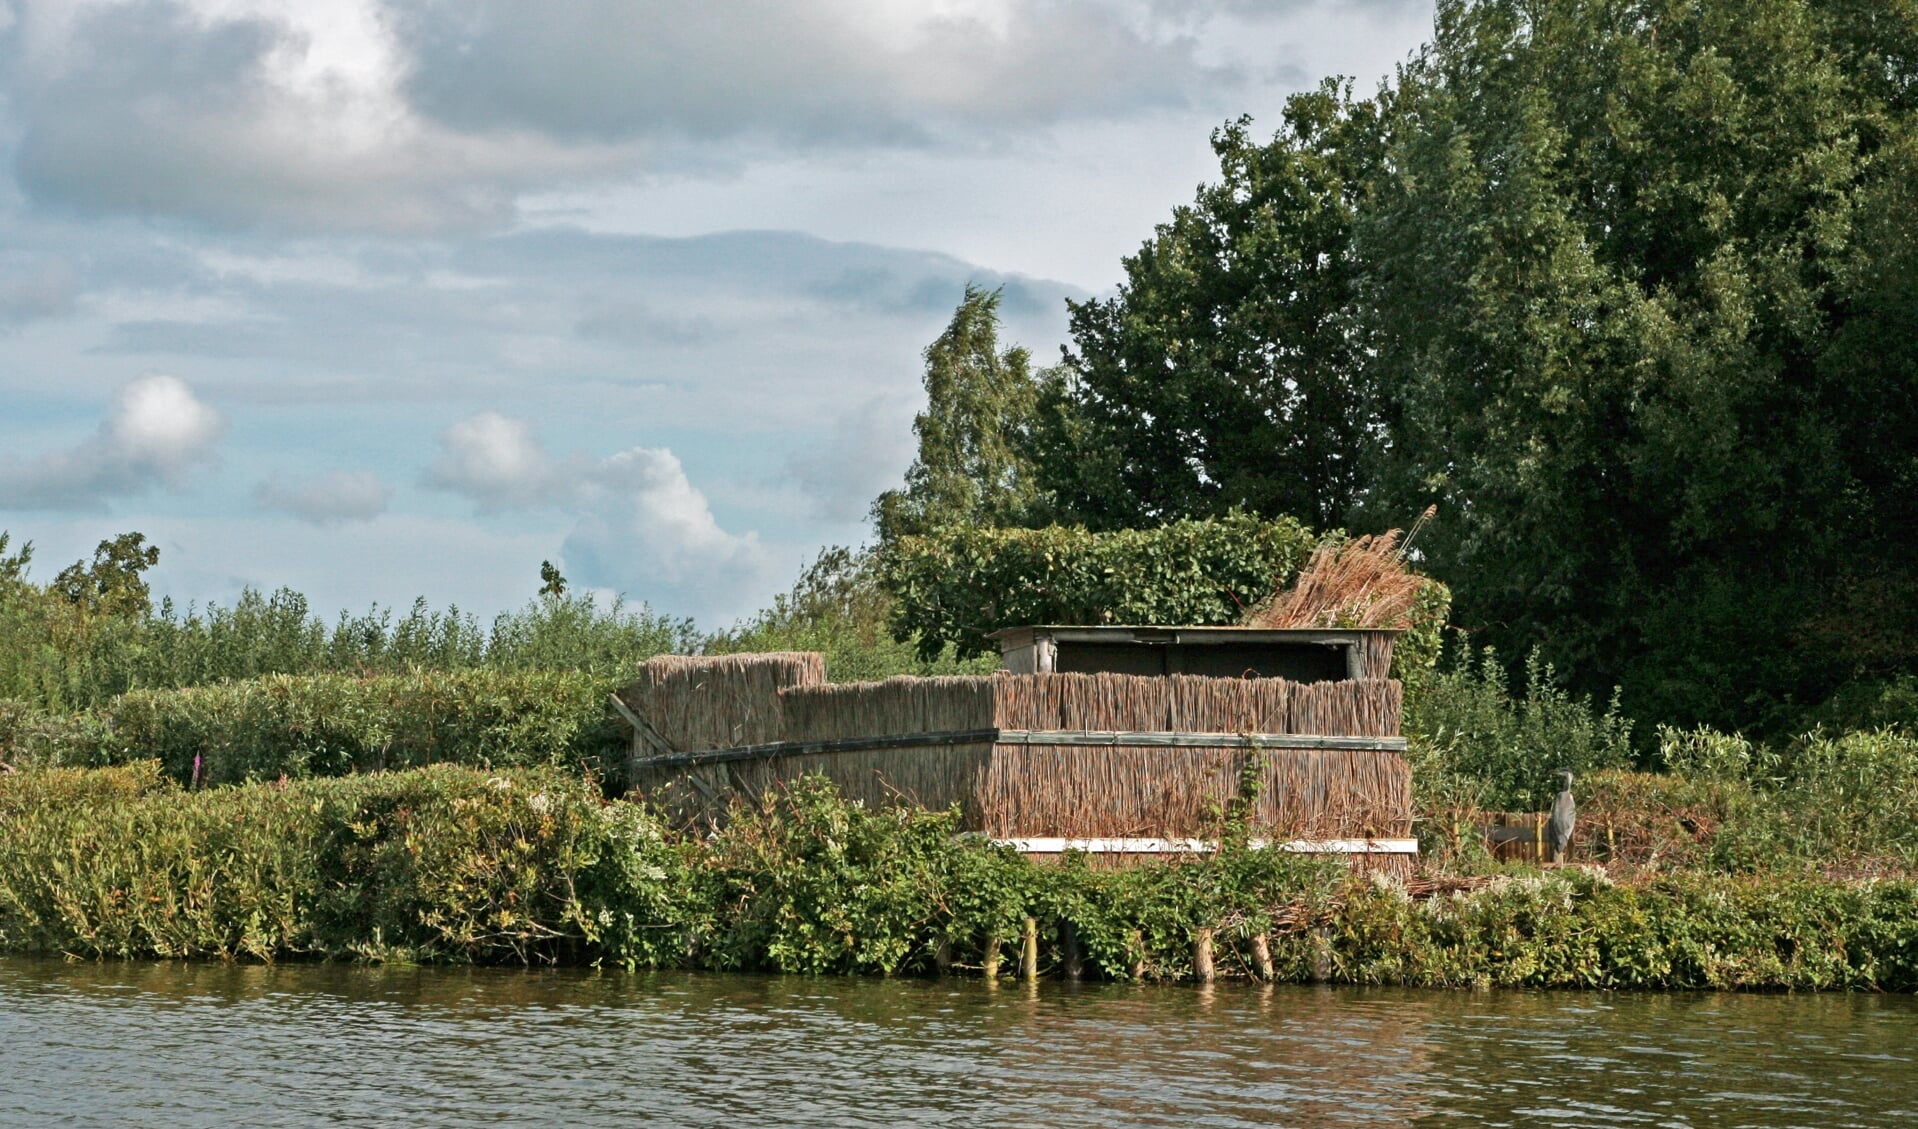 Jachthut in de Reeuwijkse Plassen, archiefbeeld ter illustratie (foto: Bert Verver)